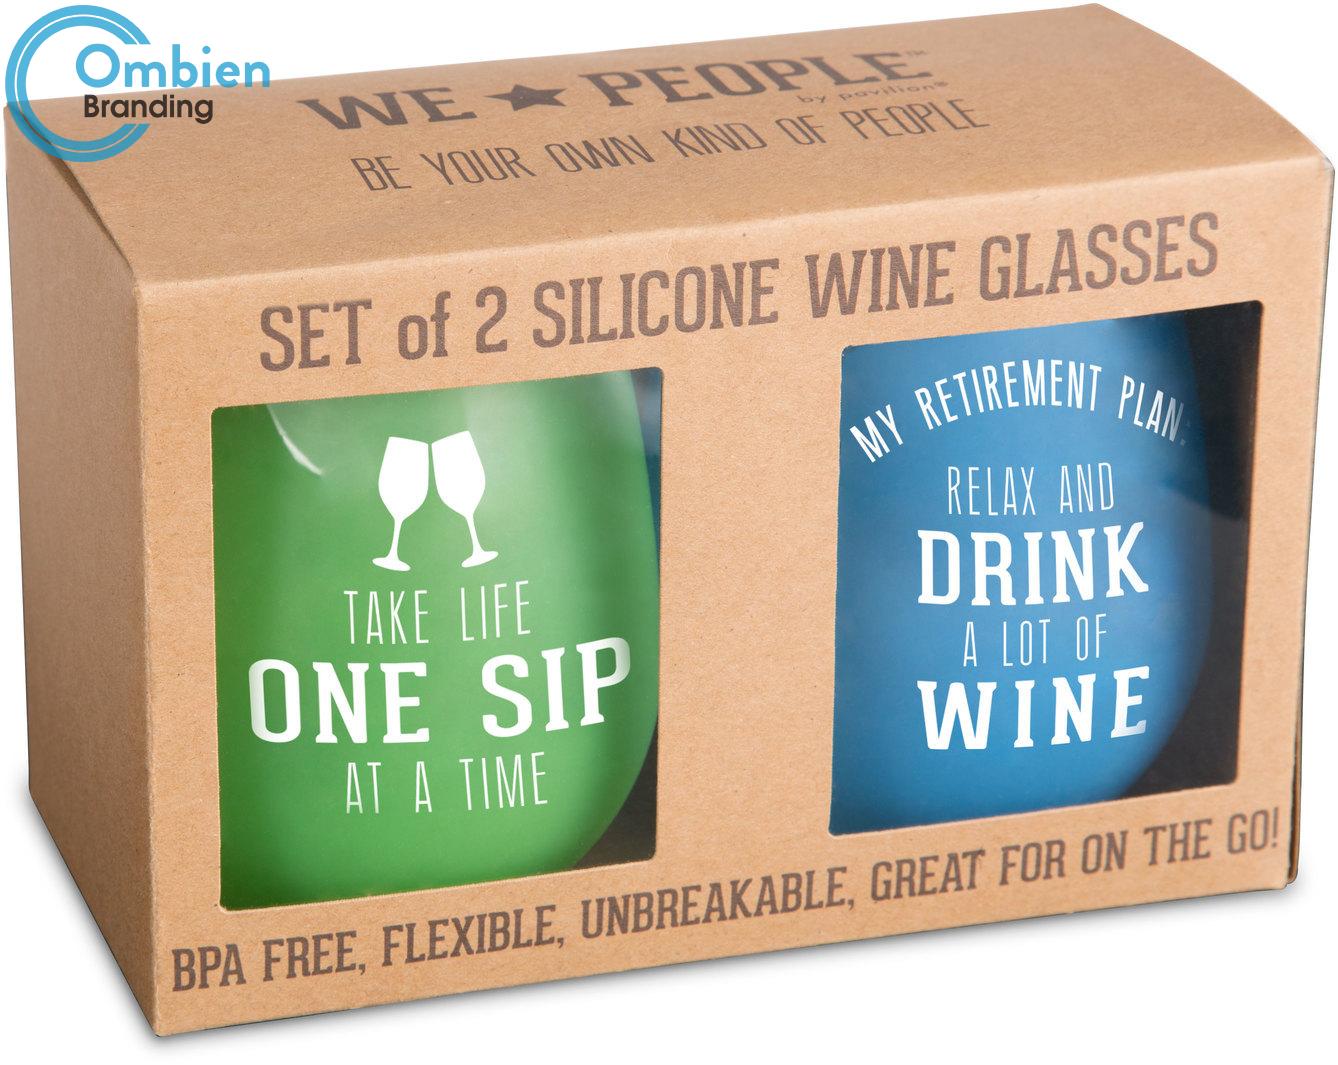 H69890 Silicone Wine Glasses